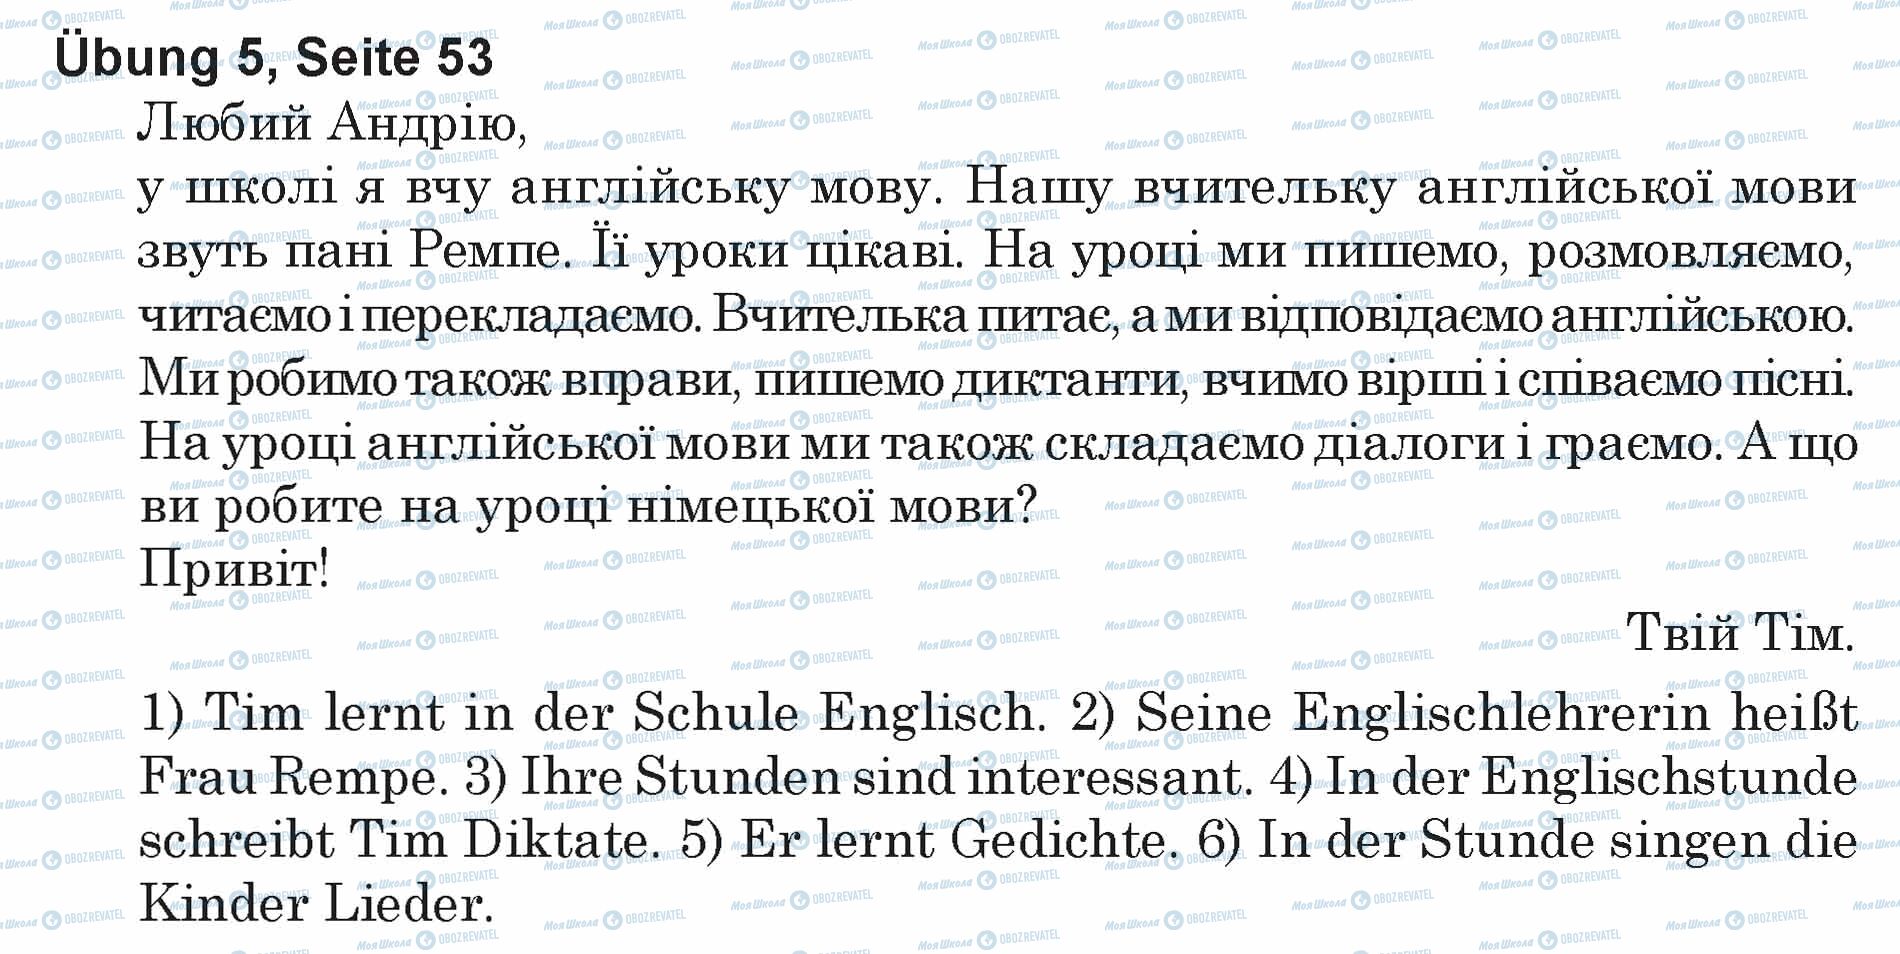 ГДЗ Німецька мова 5 клас сторінка Ubung 5, Seite 53